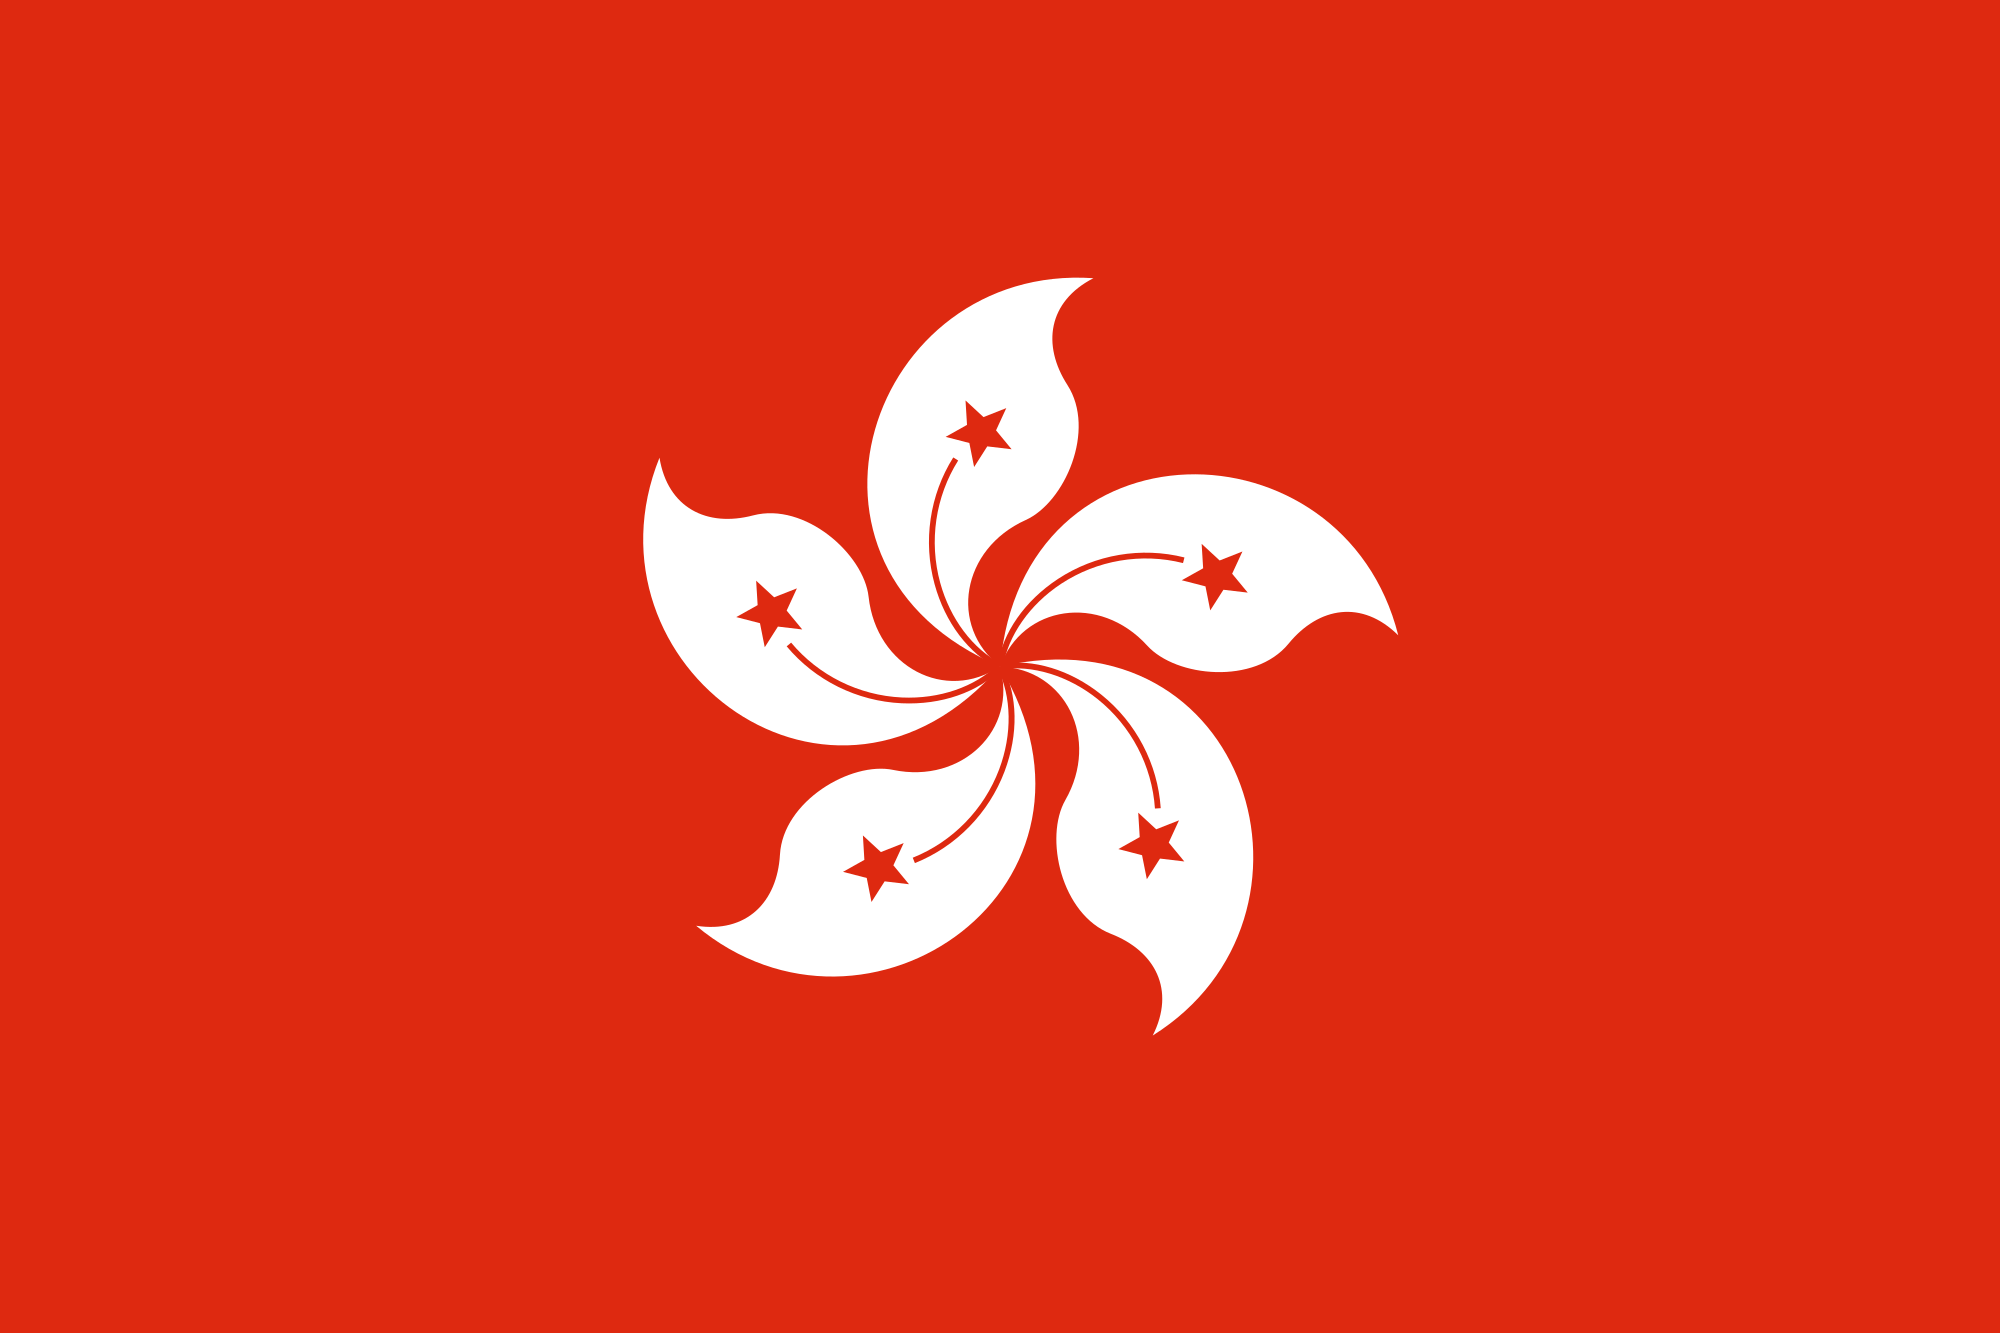 Red Flower Petal Yellow Center Green One Logo - Flag of Hong Kong